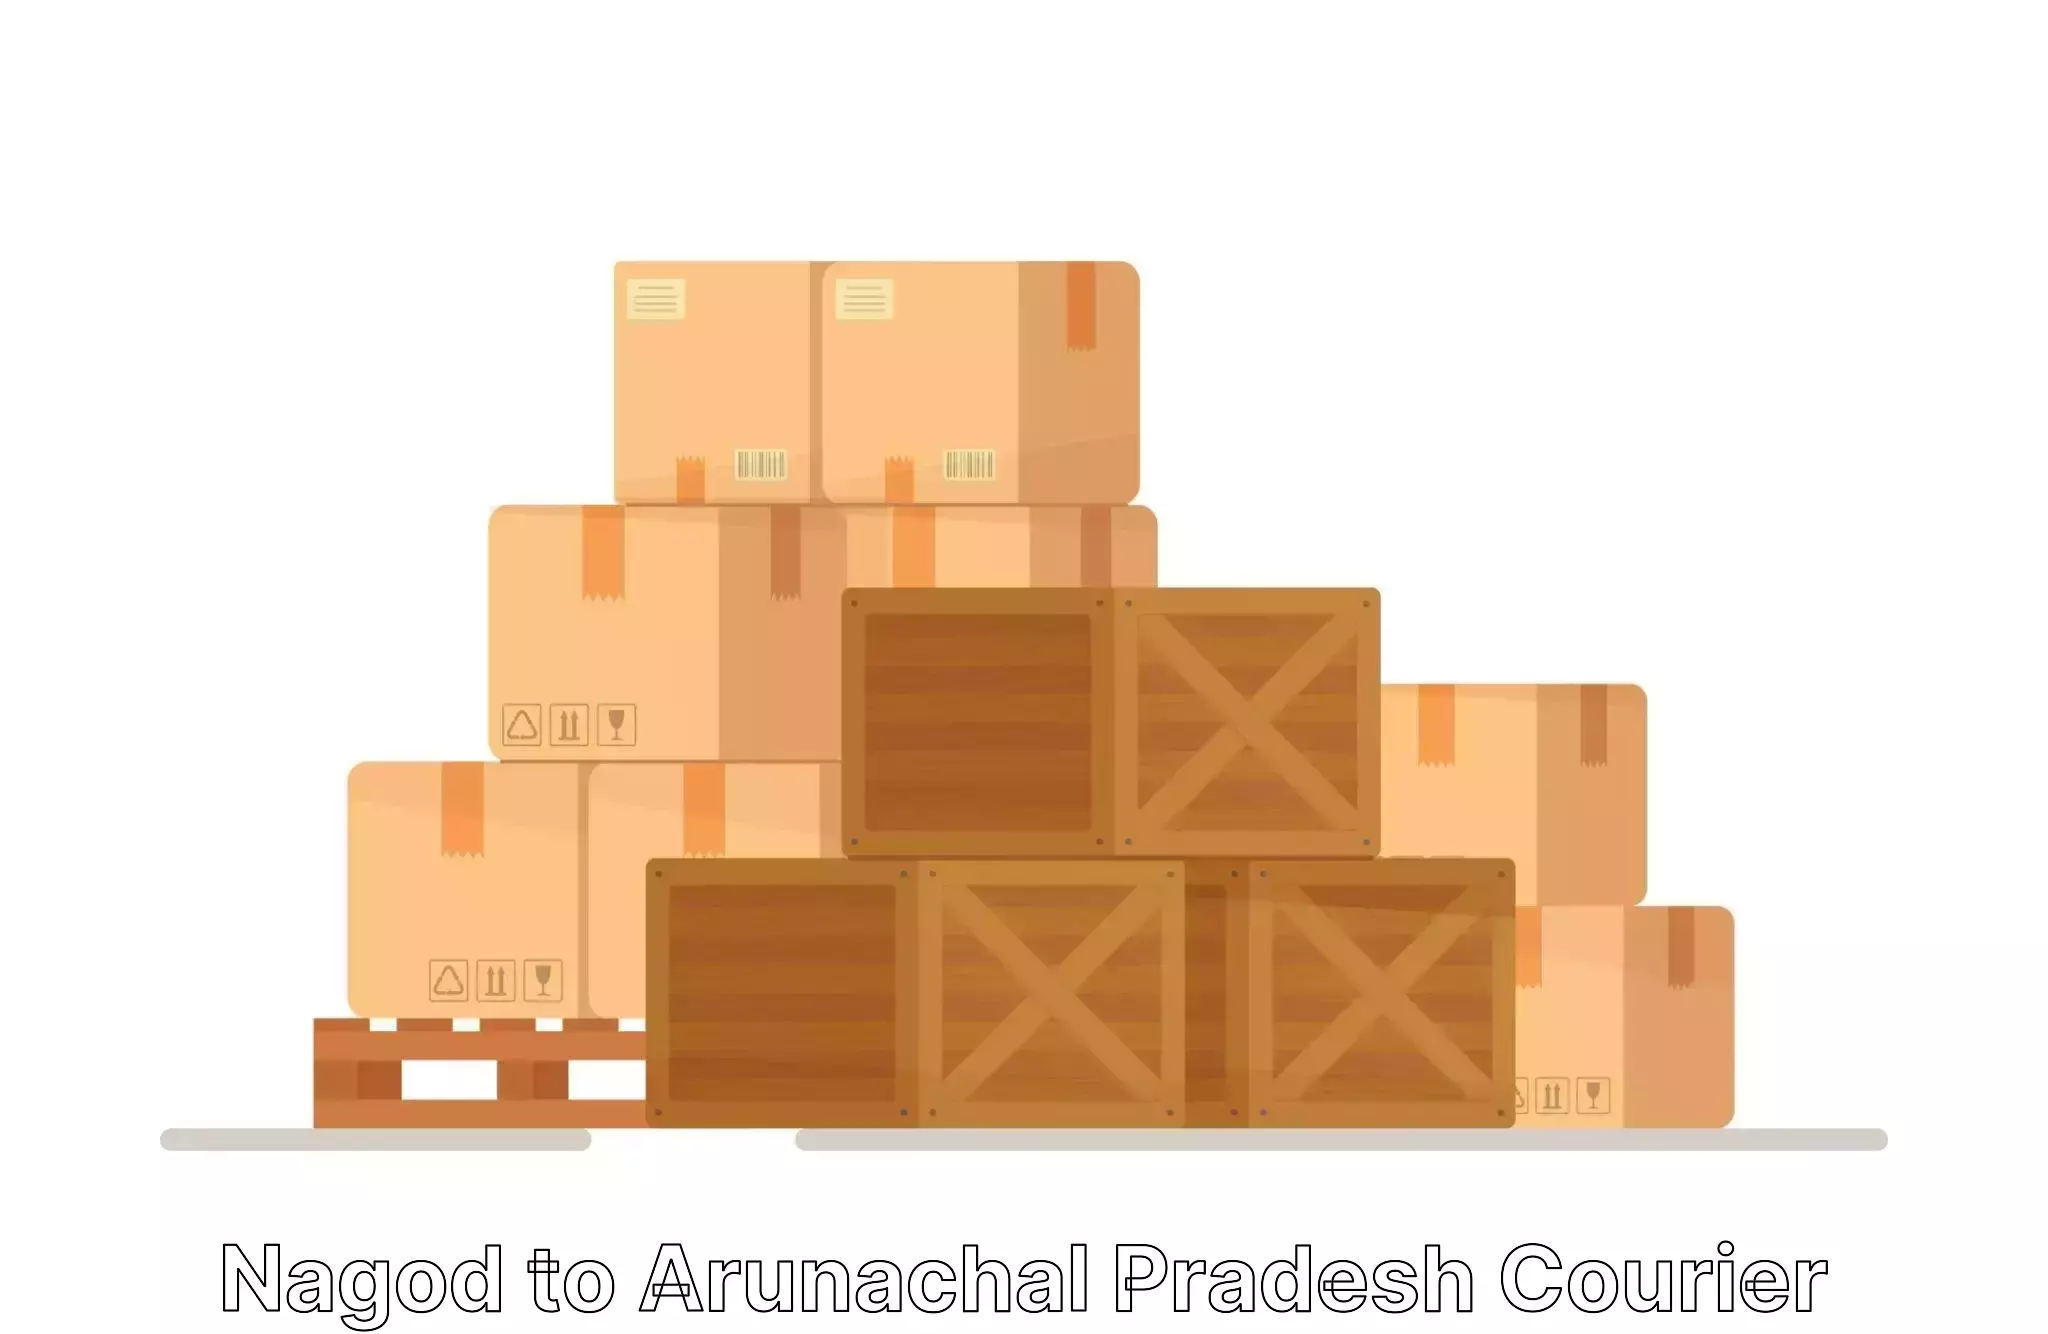 Efficient relocation services Nagod to Arunachal Pradesh